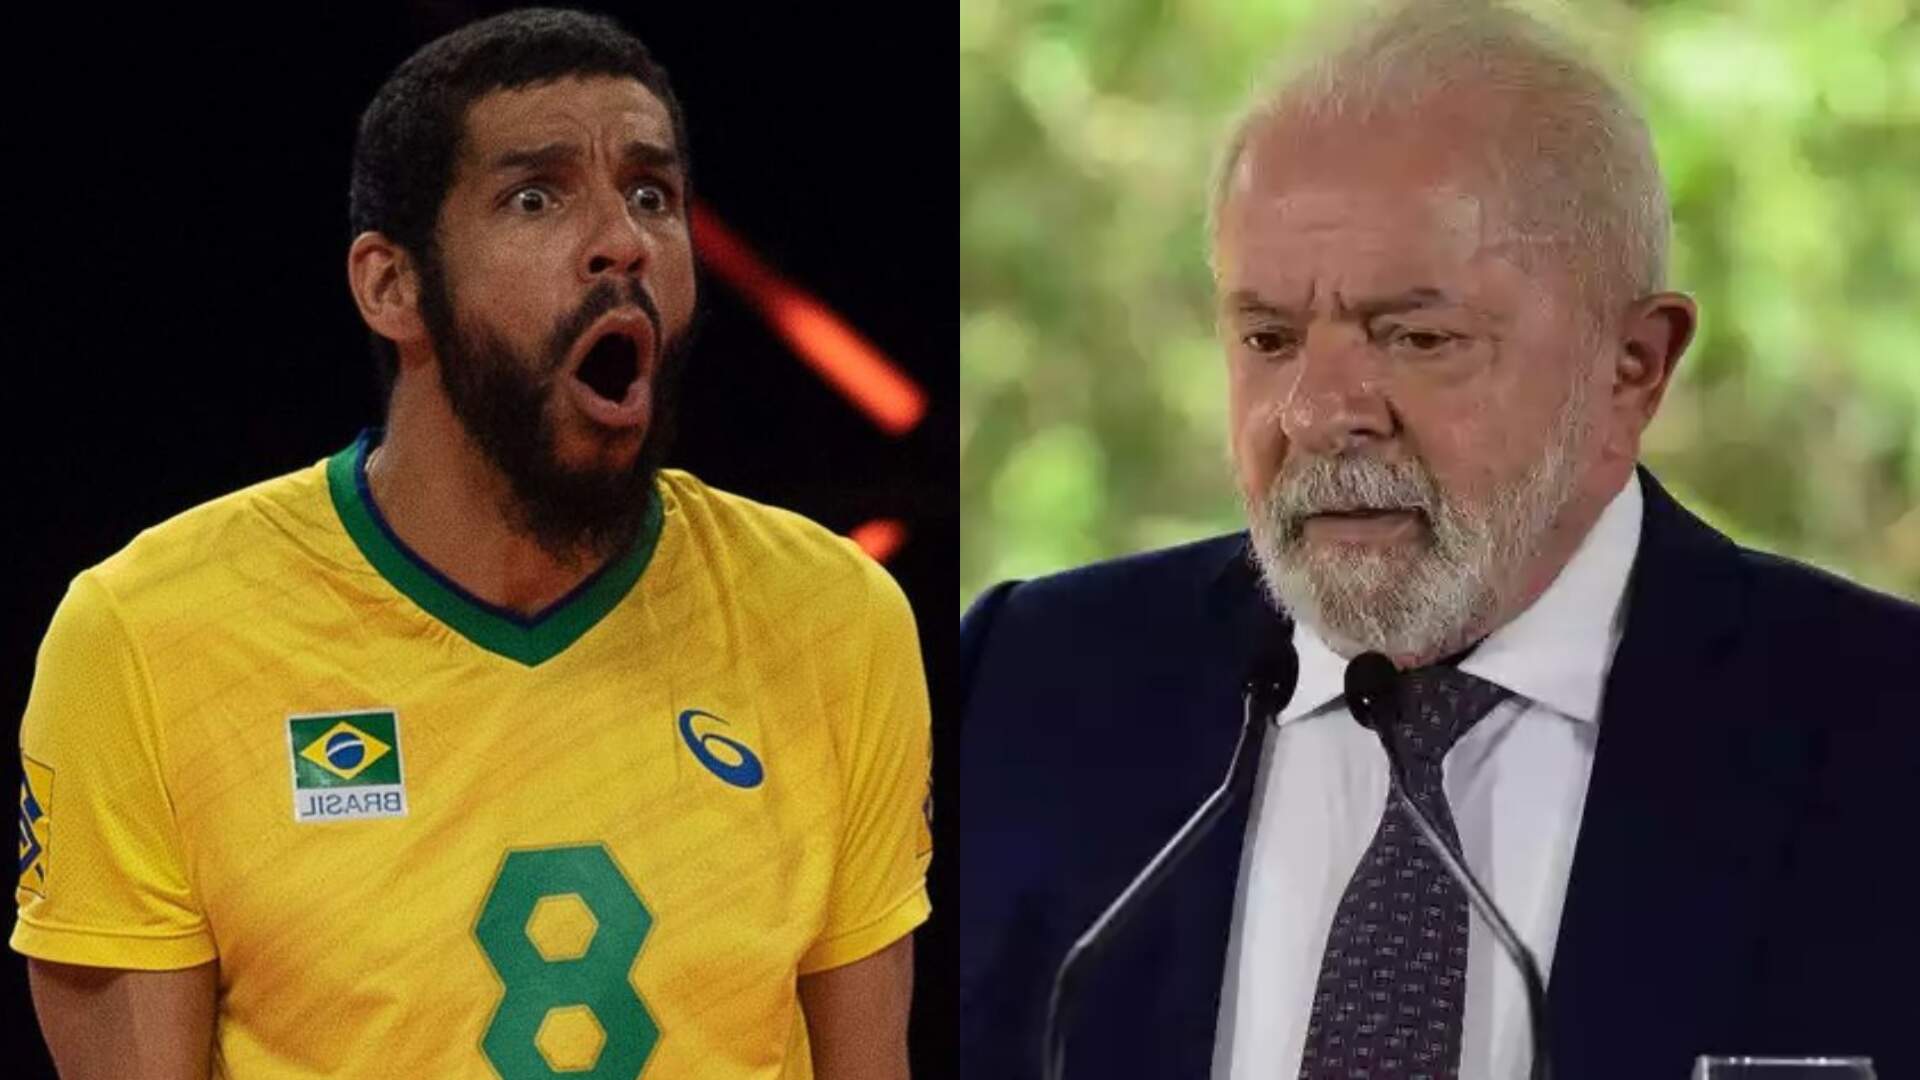 Wallace de Souza, ex-jogador da Seleção, sugere “tiro na cara” de Lula em publicação